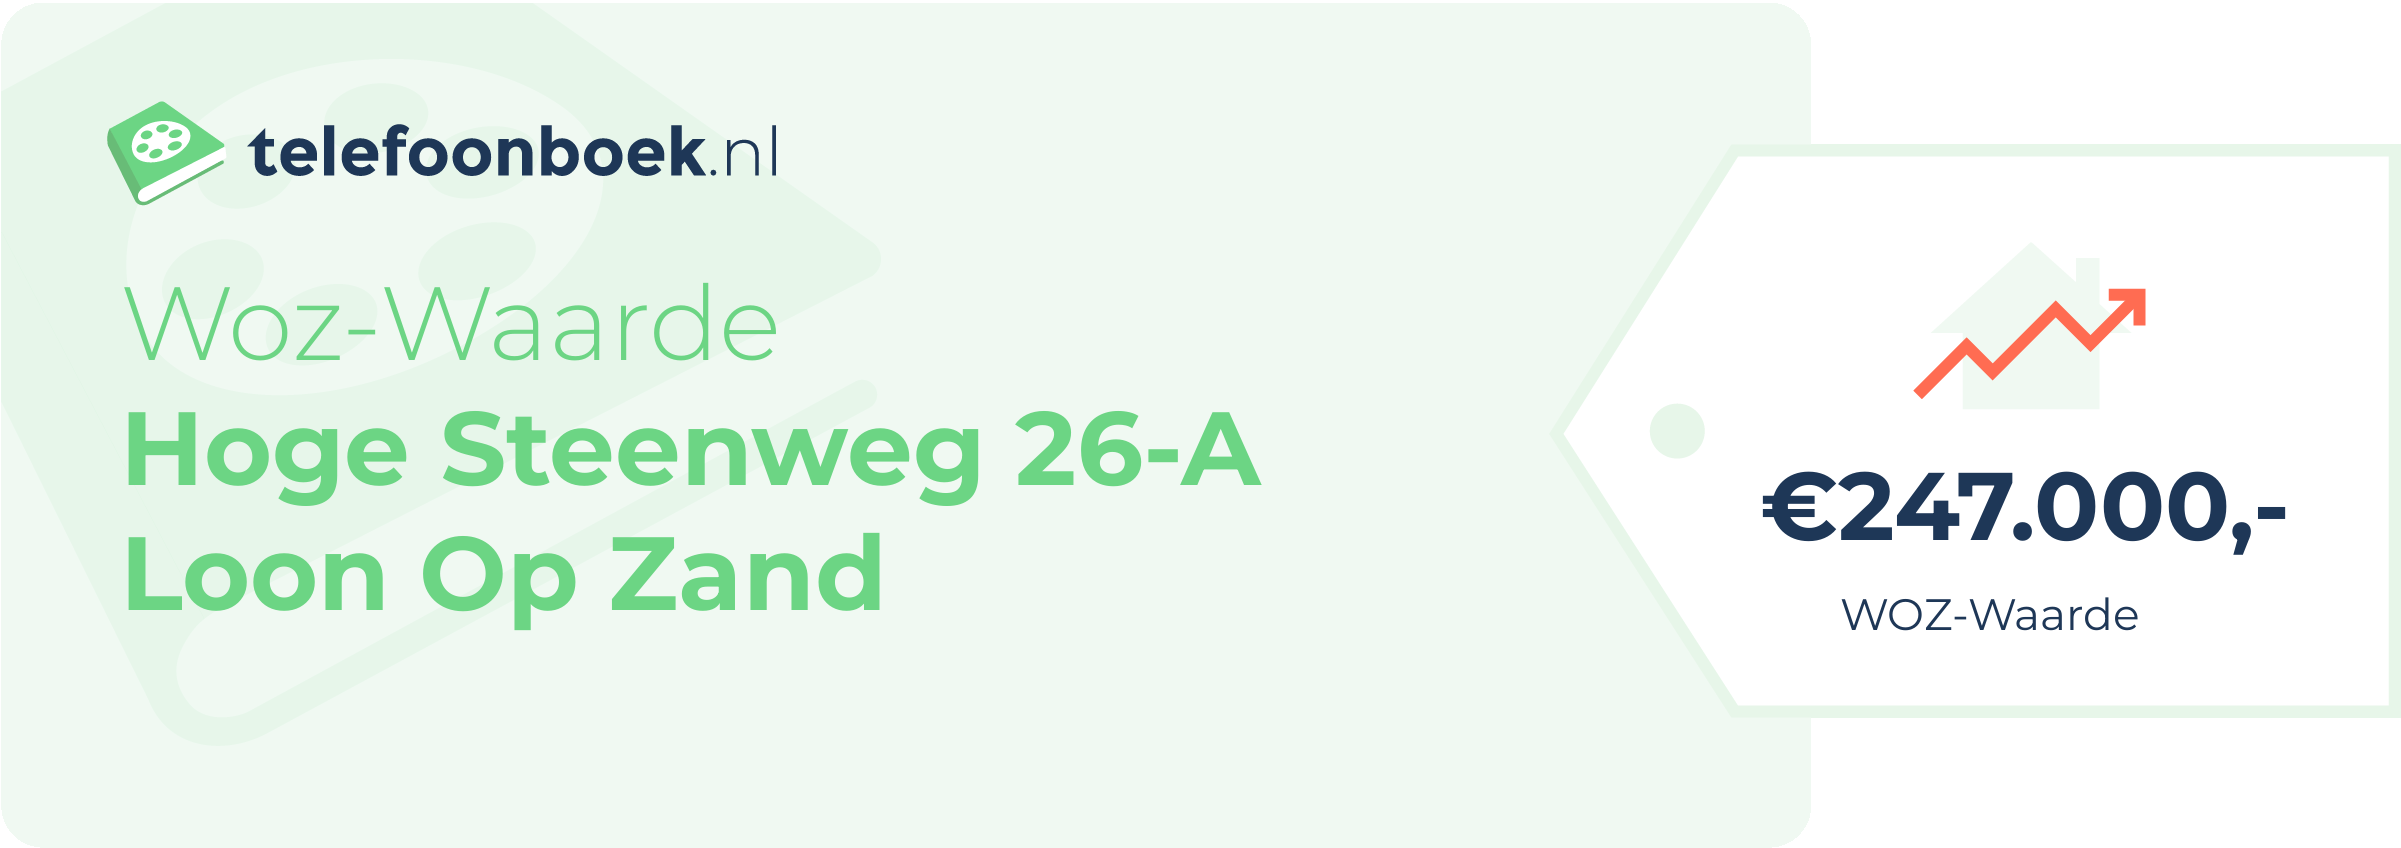 WOZ-waarde Hoge Steenweg 26-A Loon Op Zand